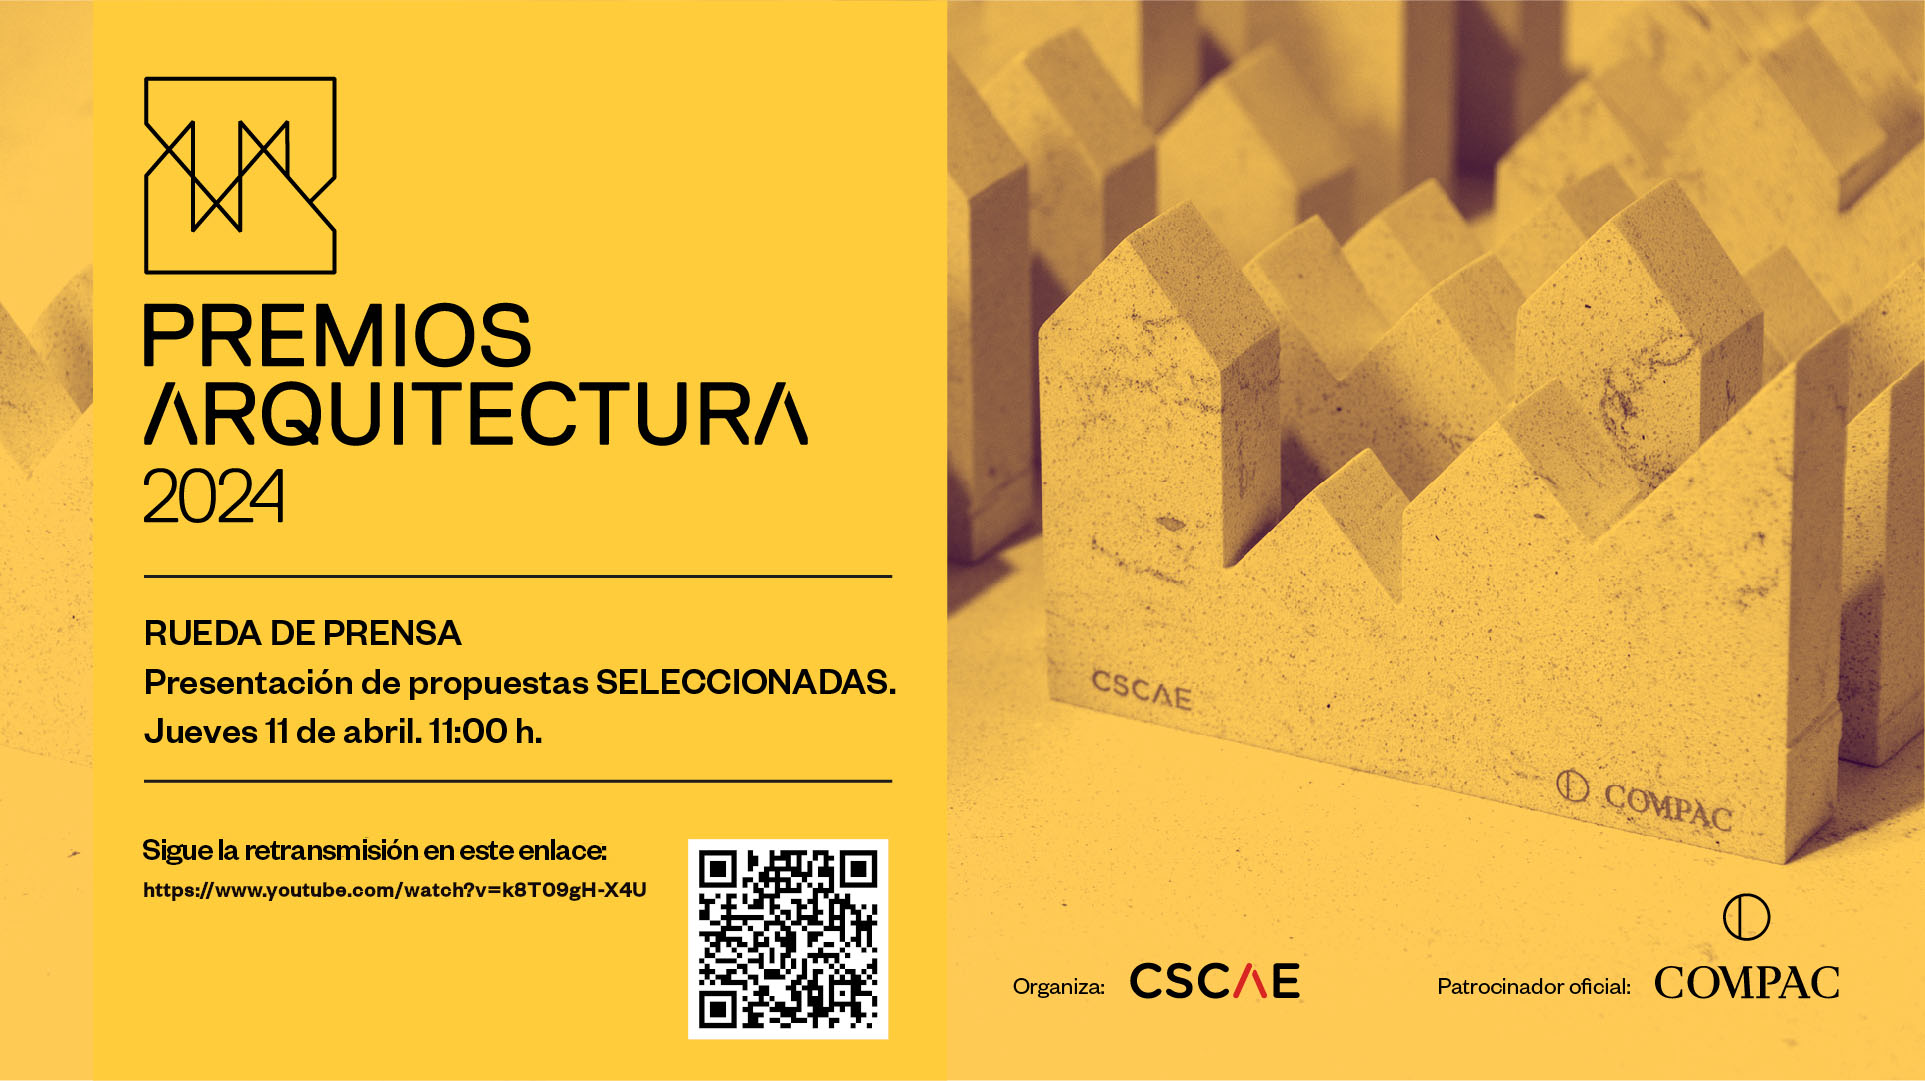 El CSCAE anunciará, en directo, las propuestas SELECCIONADAS a los Premios ARQUITECTURA 2024